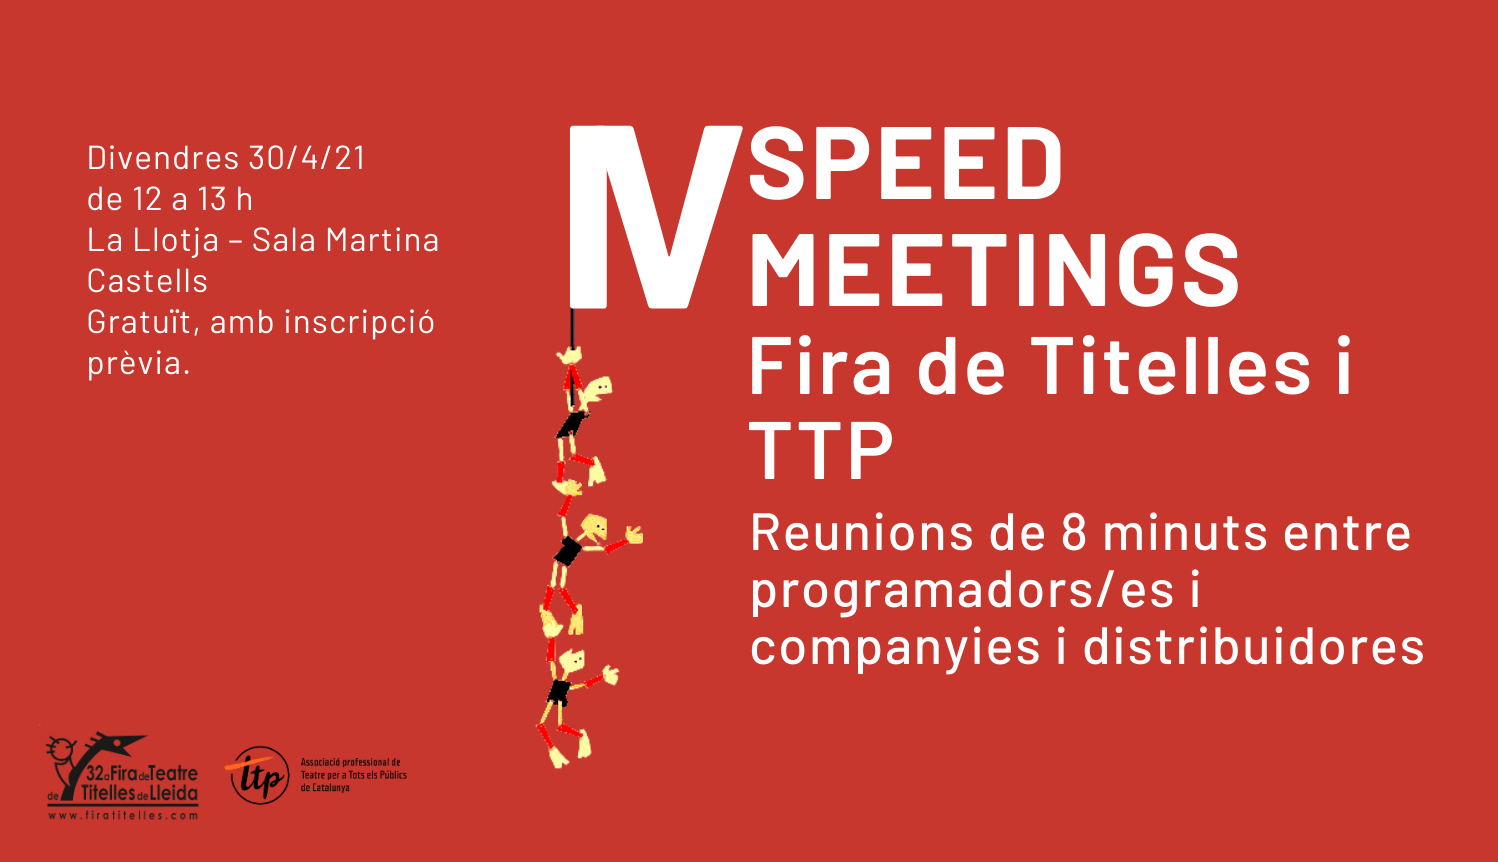 Oberta la convocatòria per participar als IV Speed Meetings a la Fira de Titelles de Lleida